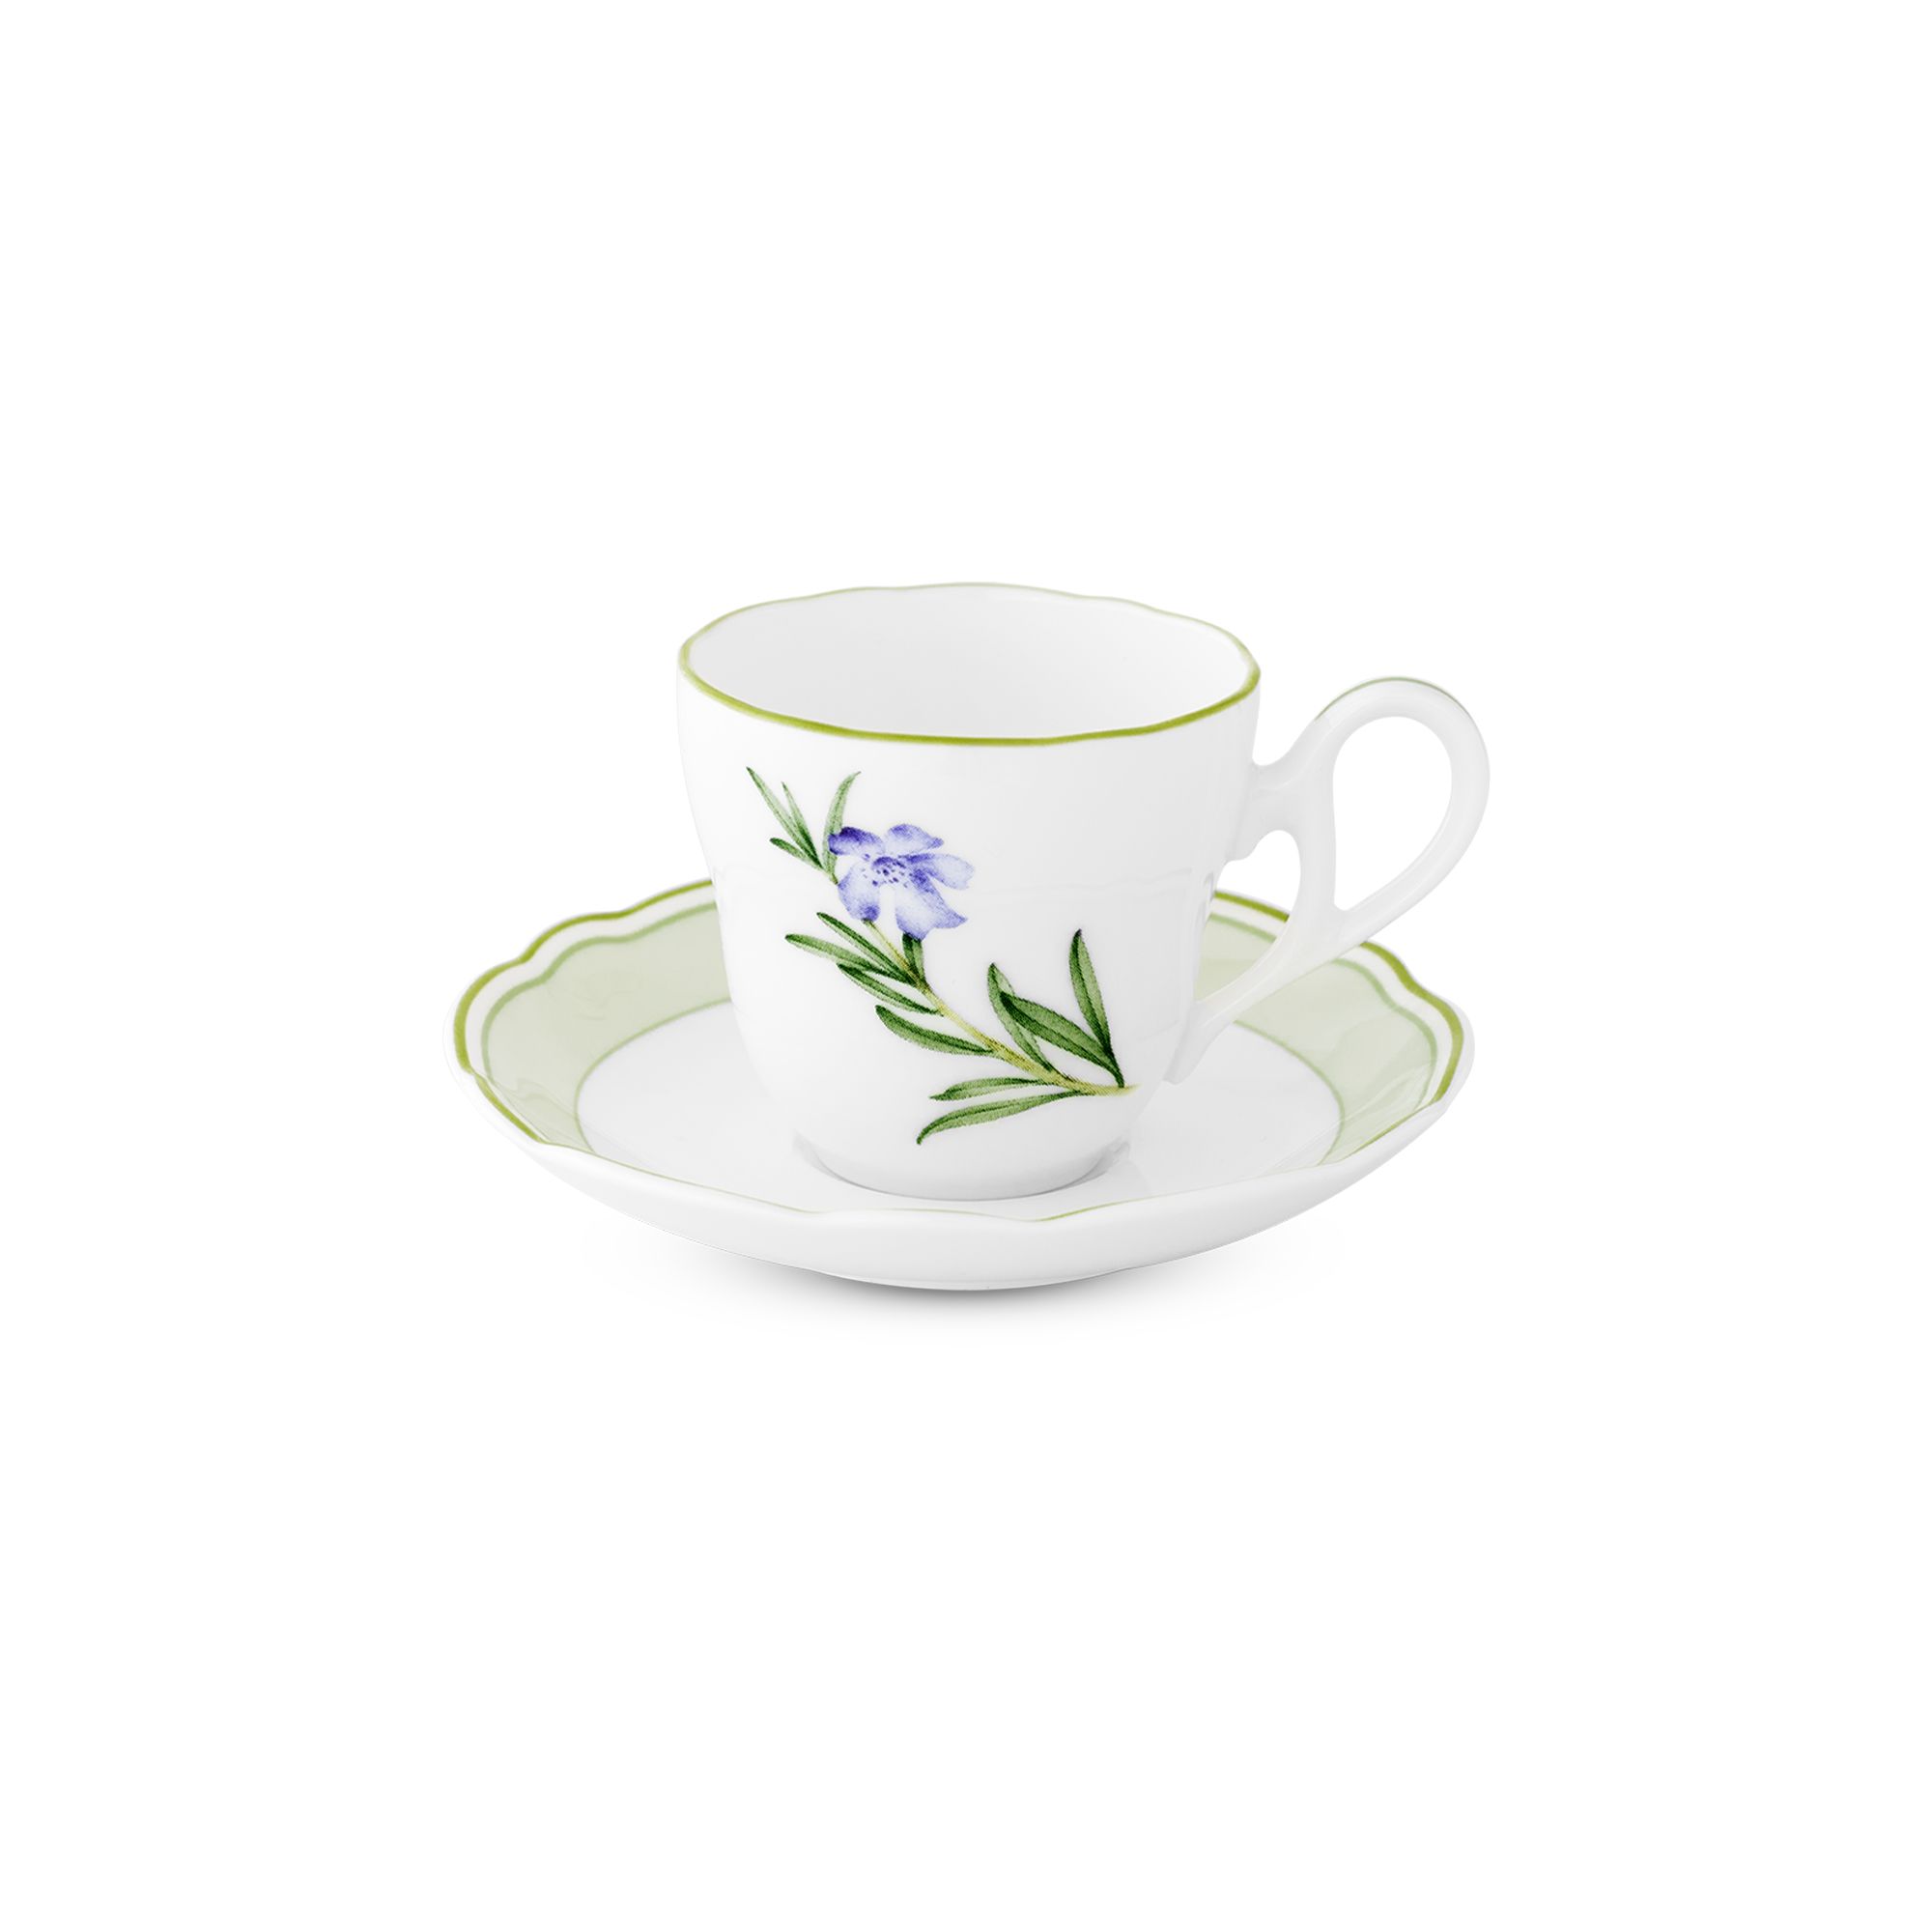  Chén trà (tách trà) kèm đĩa lót dung tích 105ml sứ xương | English Herbs 4942L-T97892 